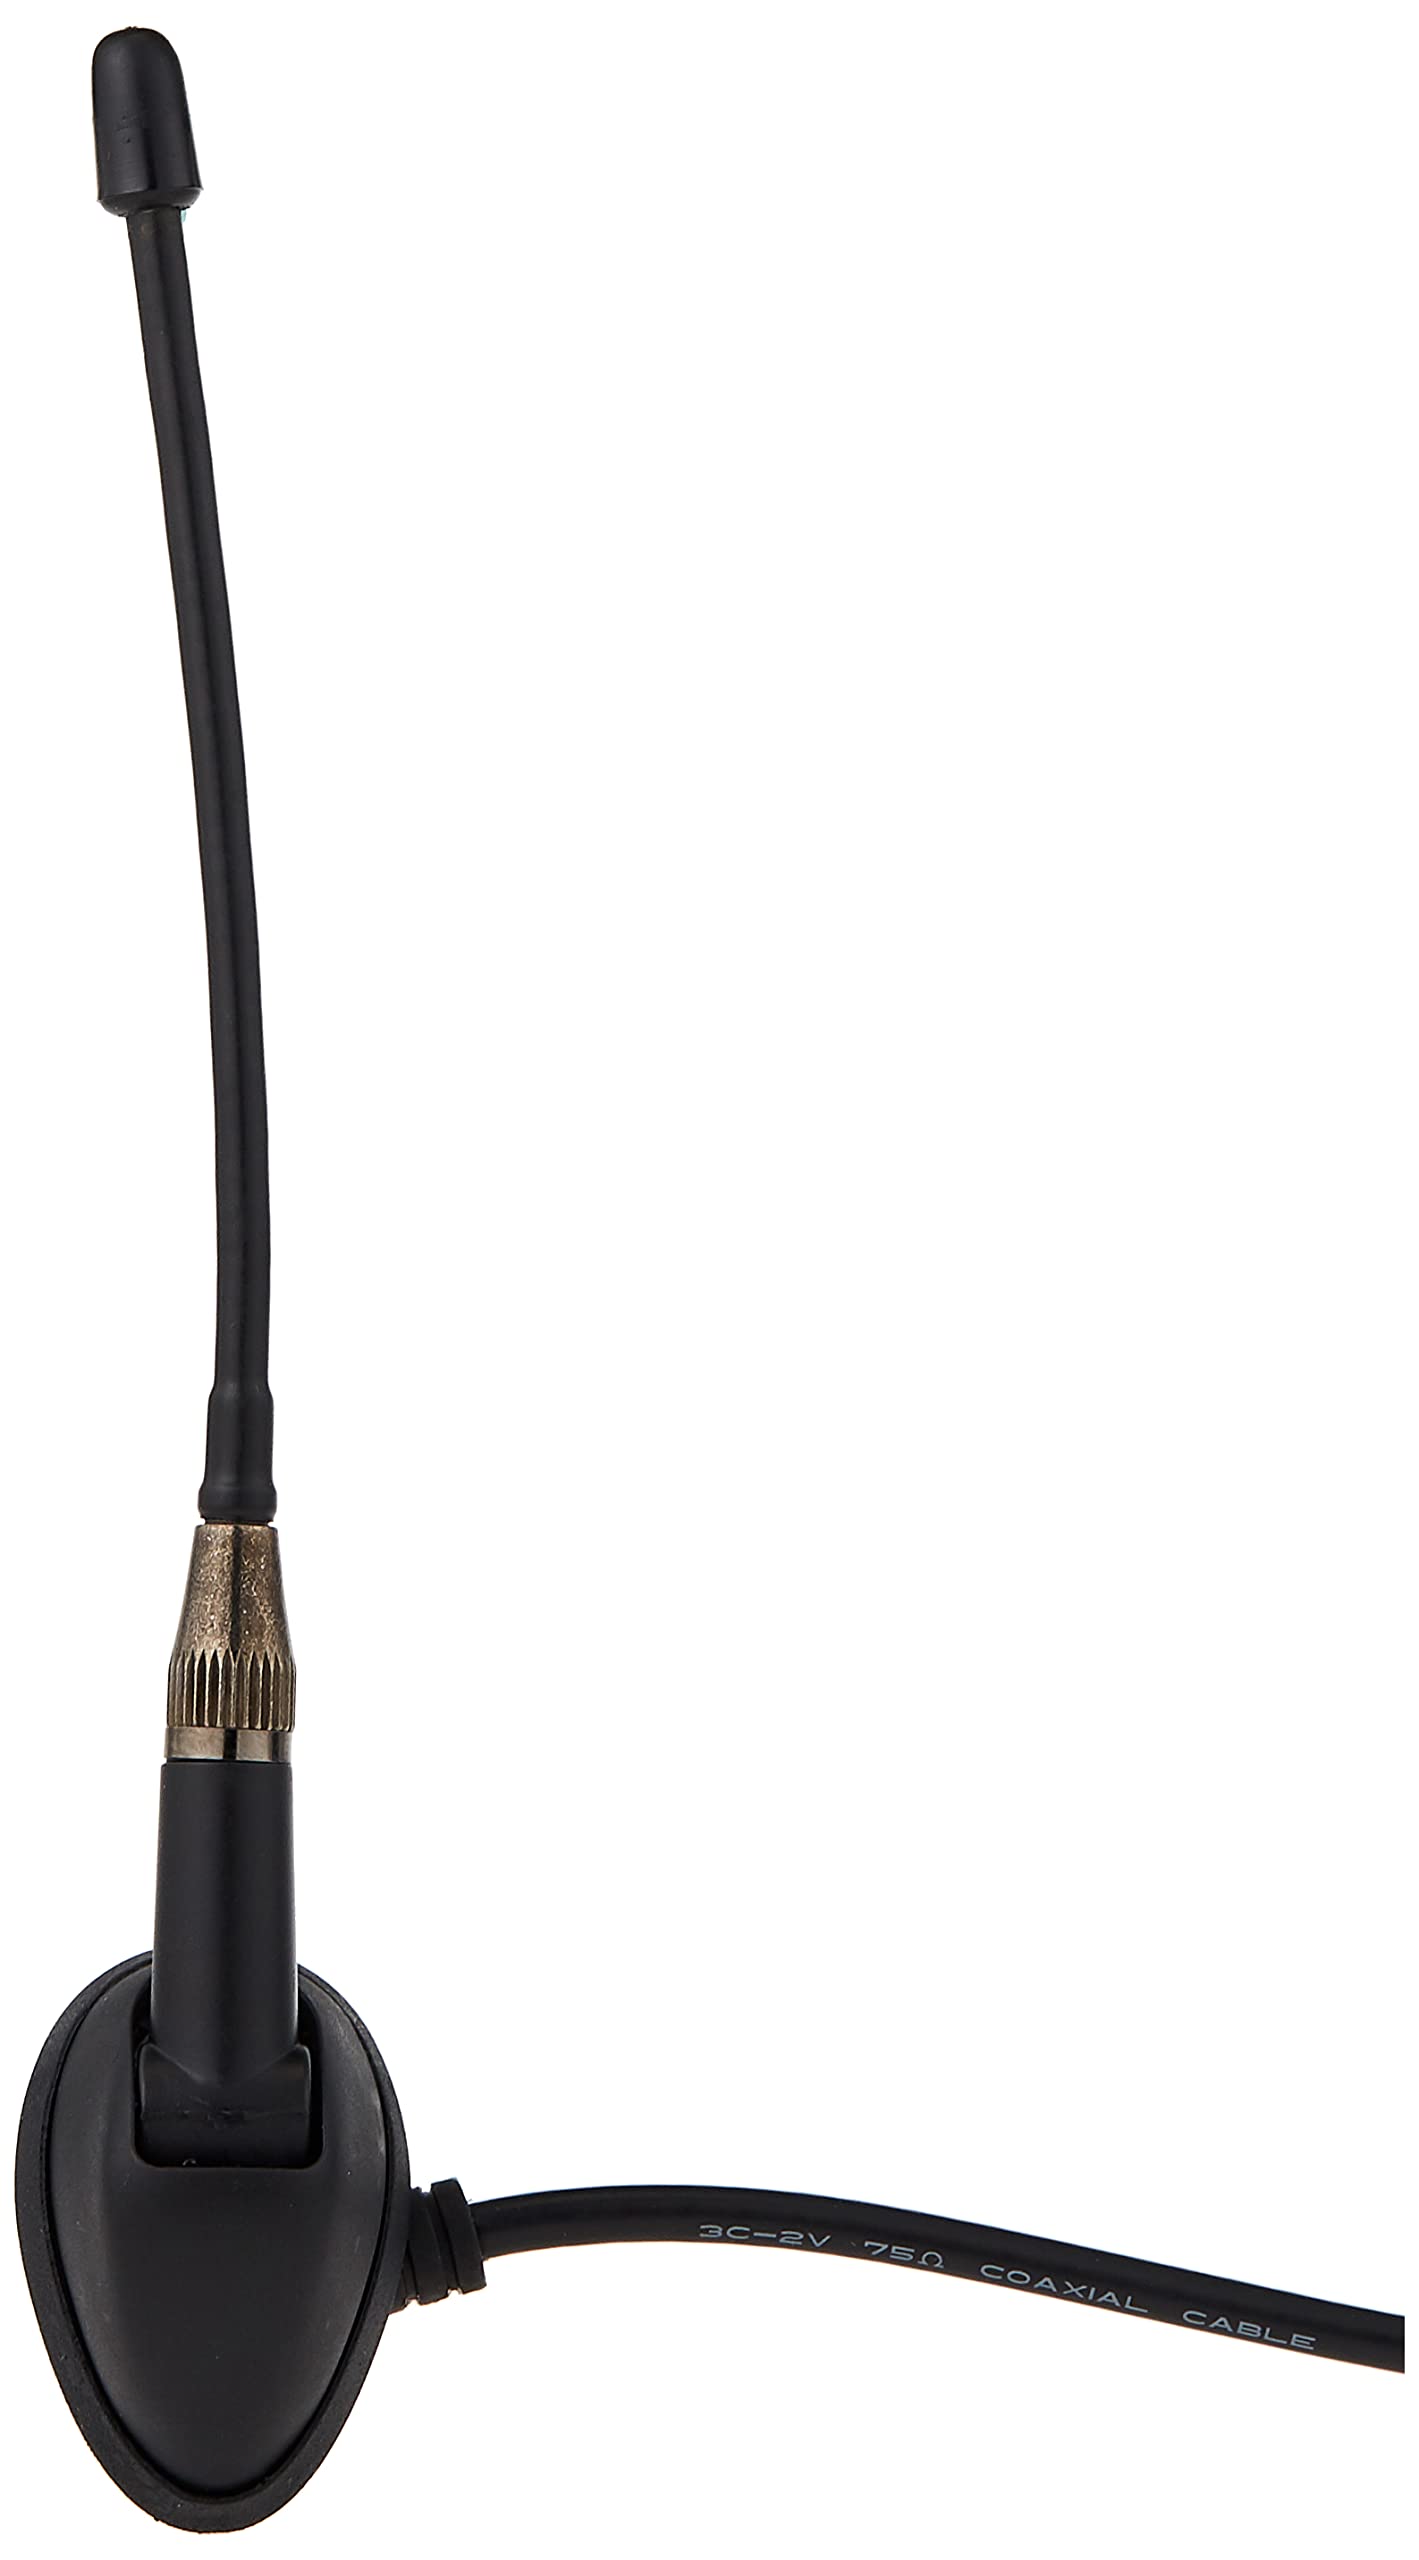 Jensen JAN139 15,2 cm robuste Universal-Gummi-Mast-Antenne für Oben und seitlich montierte Ober- und Seitenanschluss, Schwarz von ASA Electronics